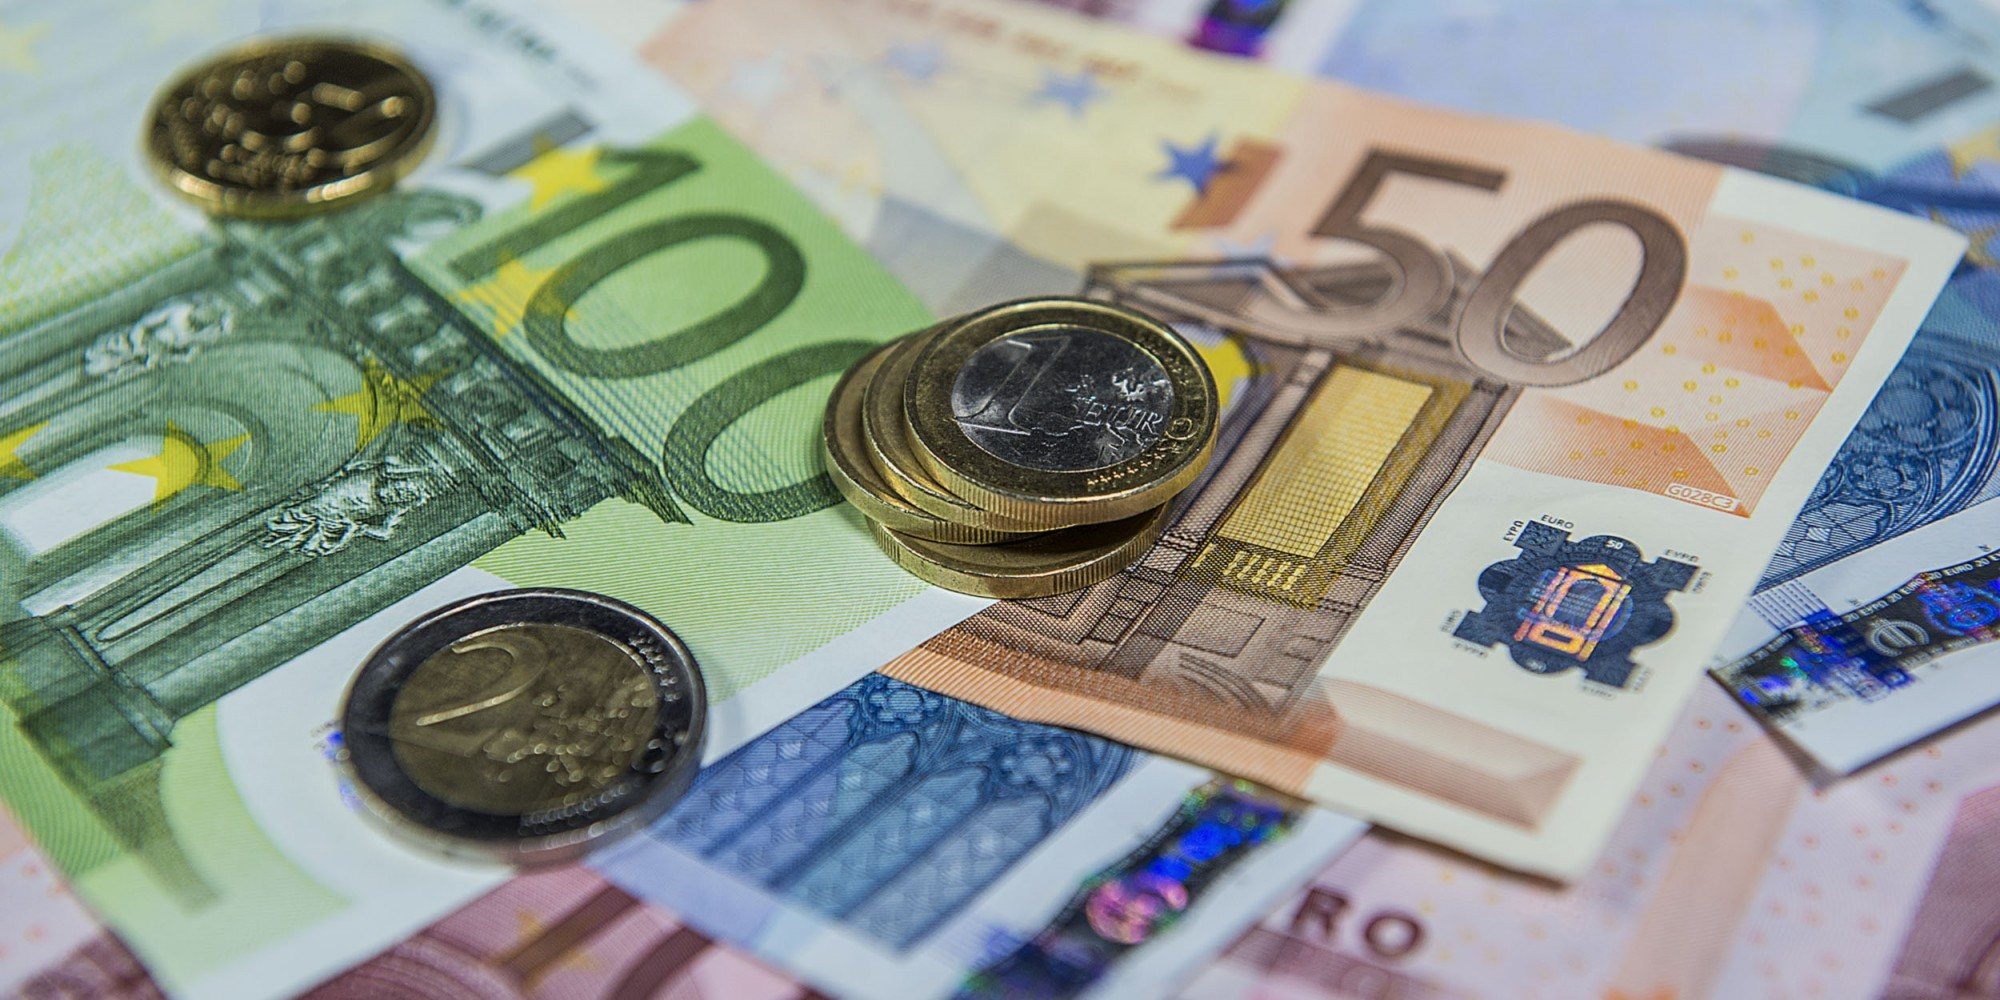 O euro começou a circular fisicamente a 1 de janeiro de 2002, há 20 anos